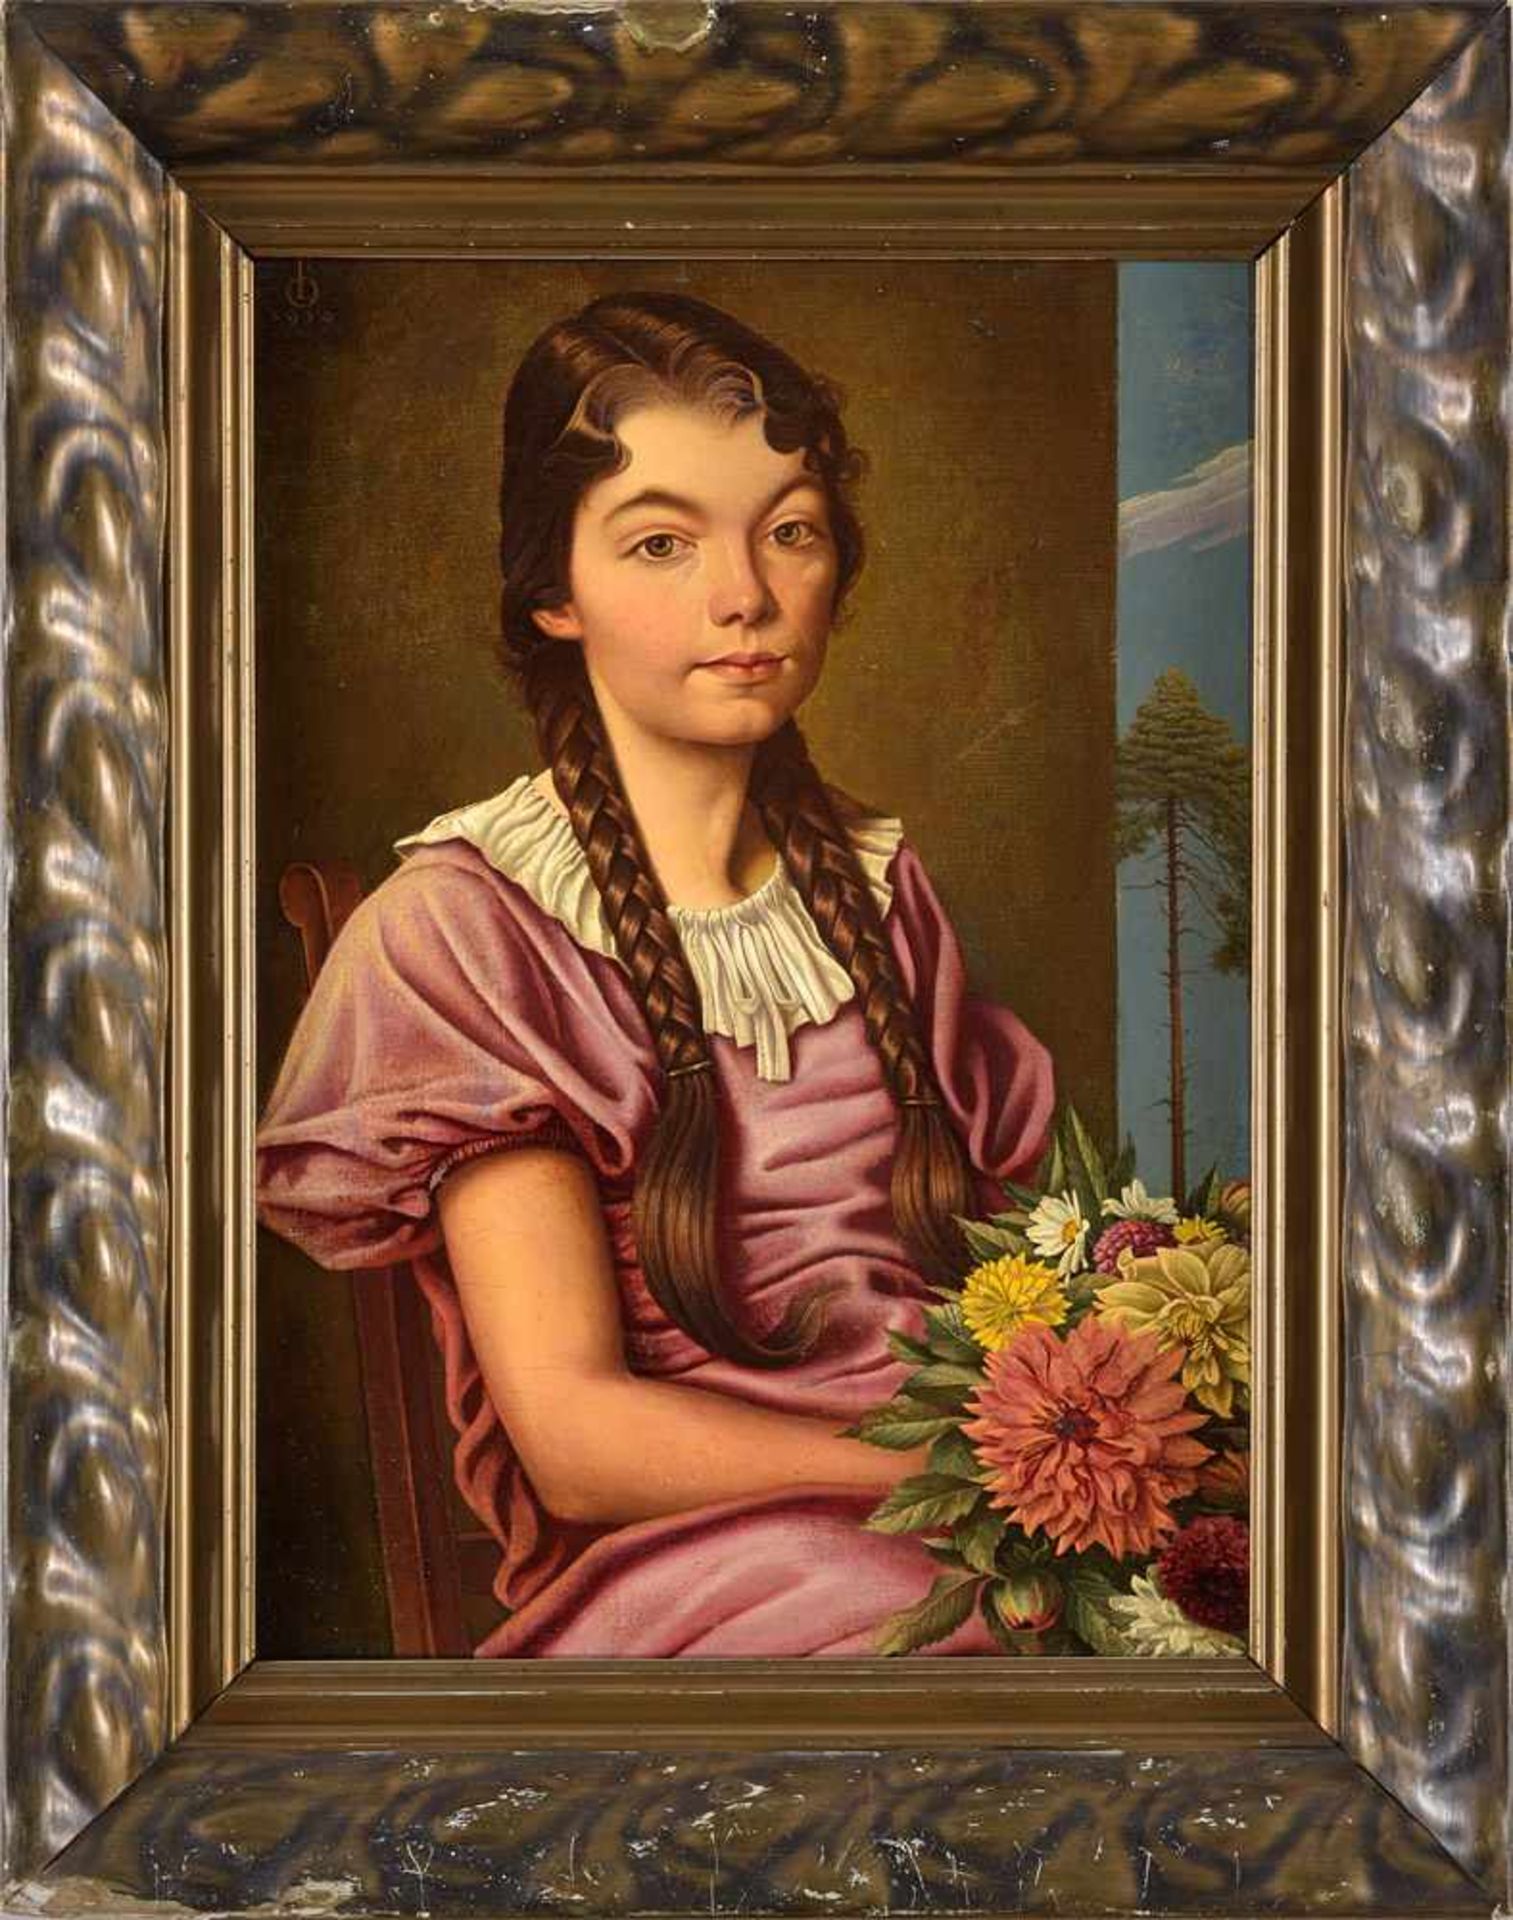 Monogrammist Datiert 1939Sitzendes Mädchen mit Blumenstrauß.Öl/Lwd., 54 x 39 cm. - Bild 2 aus 3